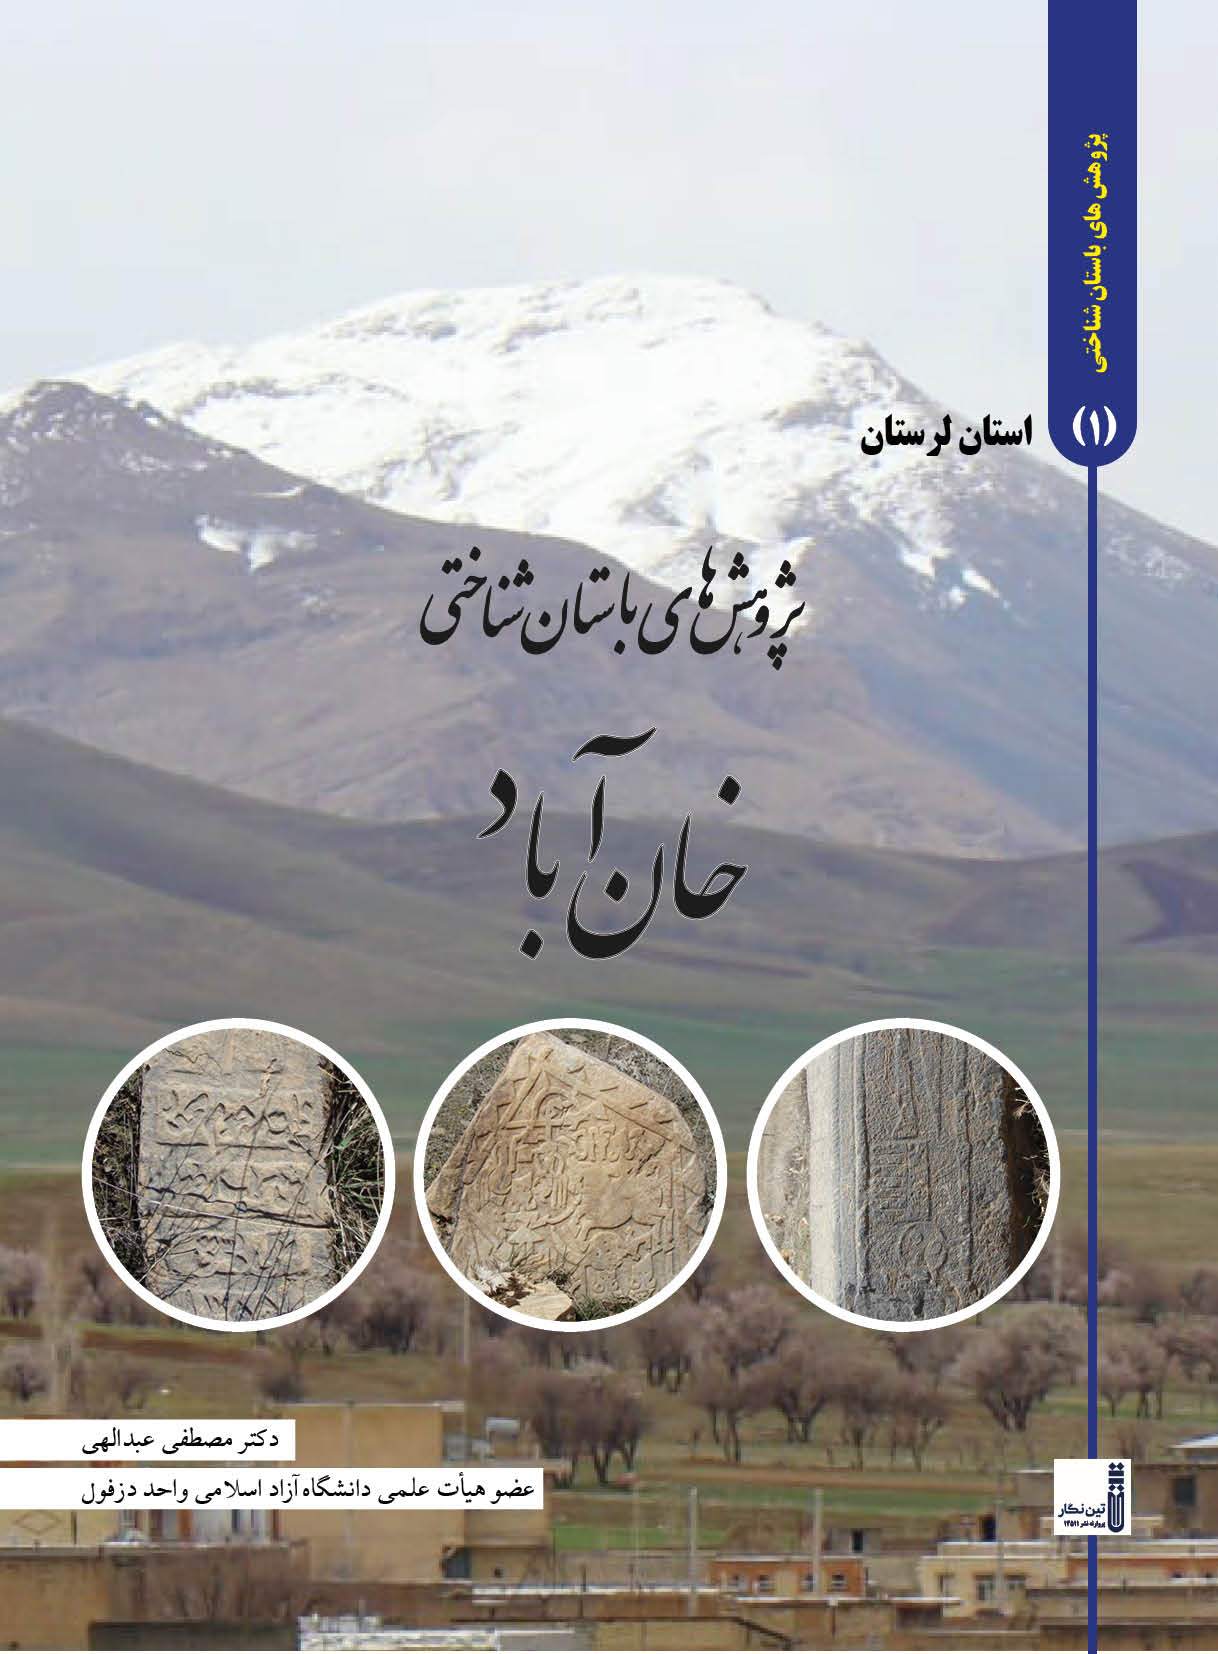 کتاب پژوهشهای باستان شناختی خان آباد الیگودرز لرستان منتشر شد